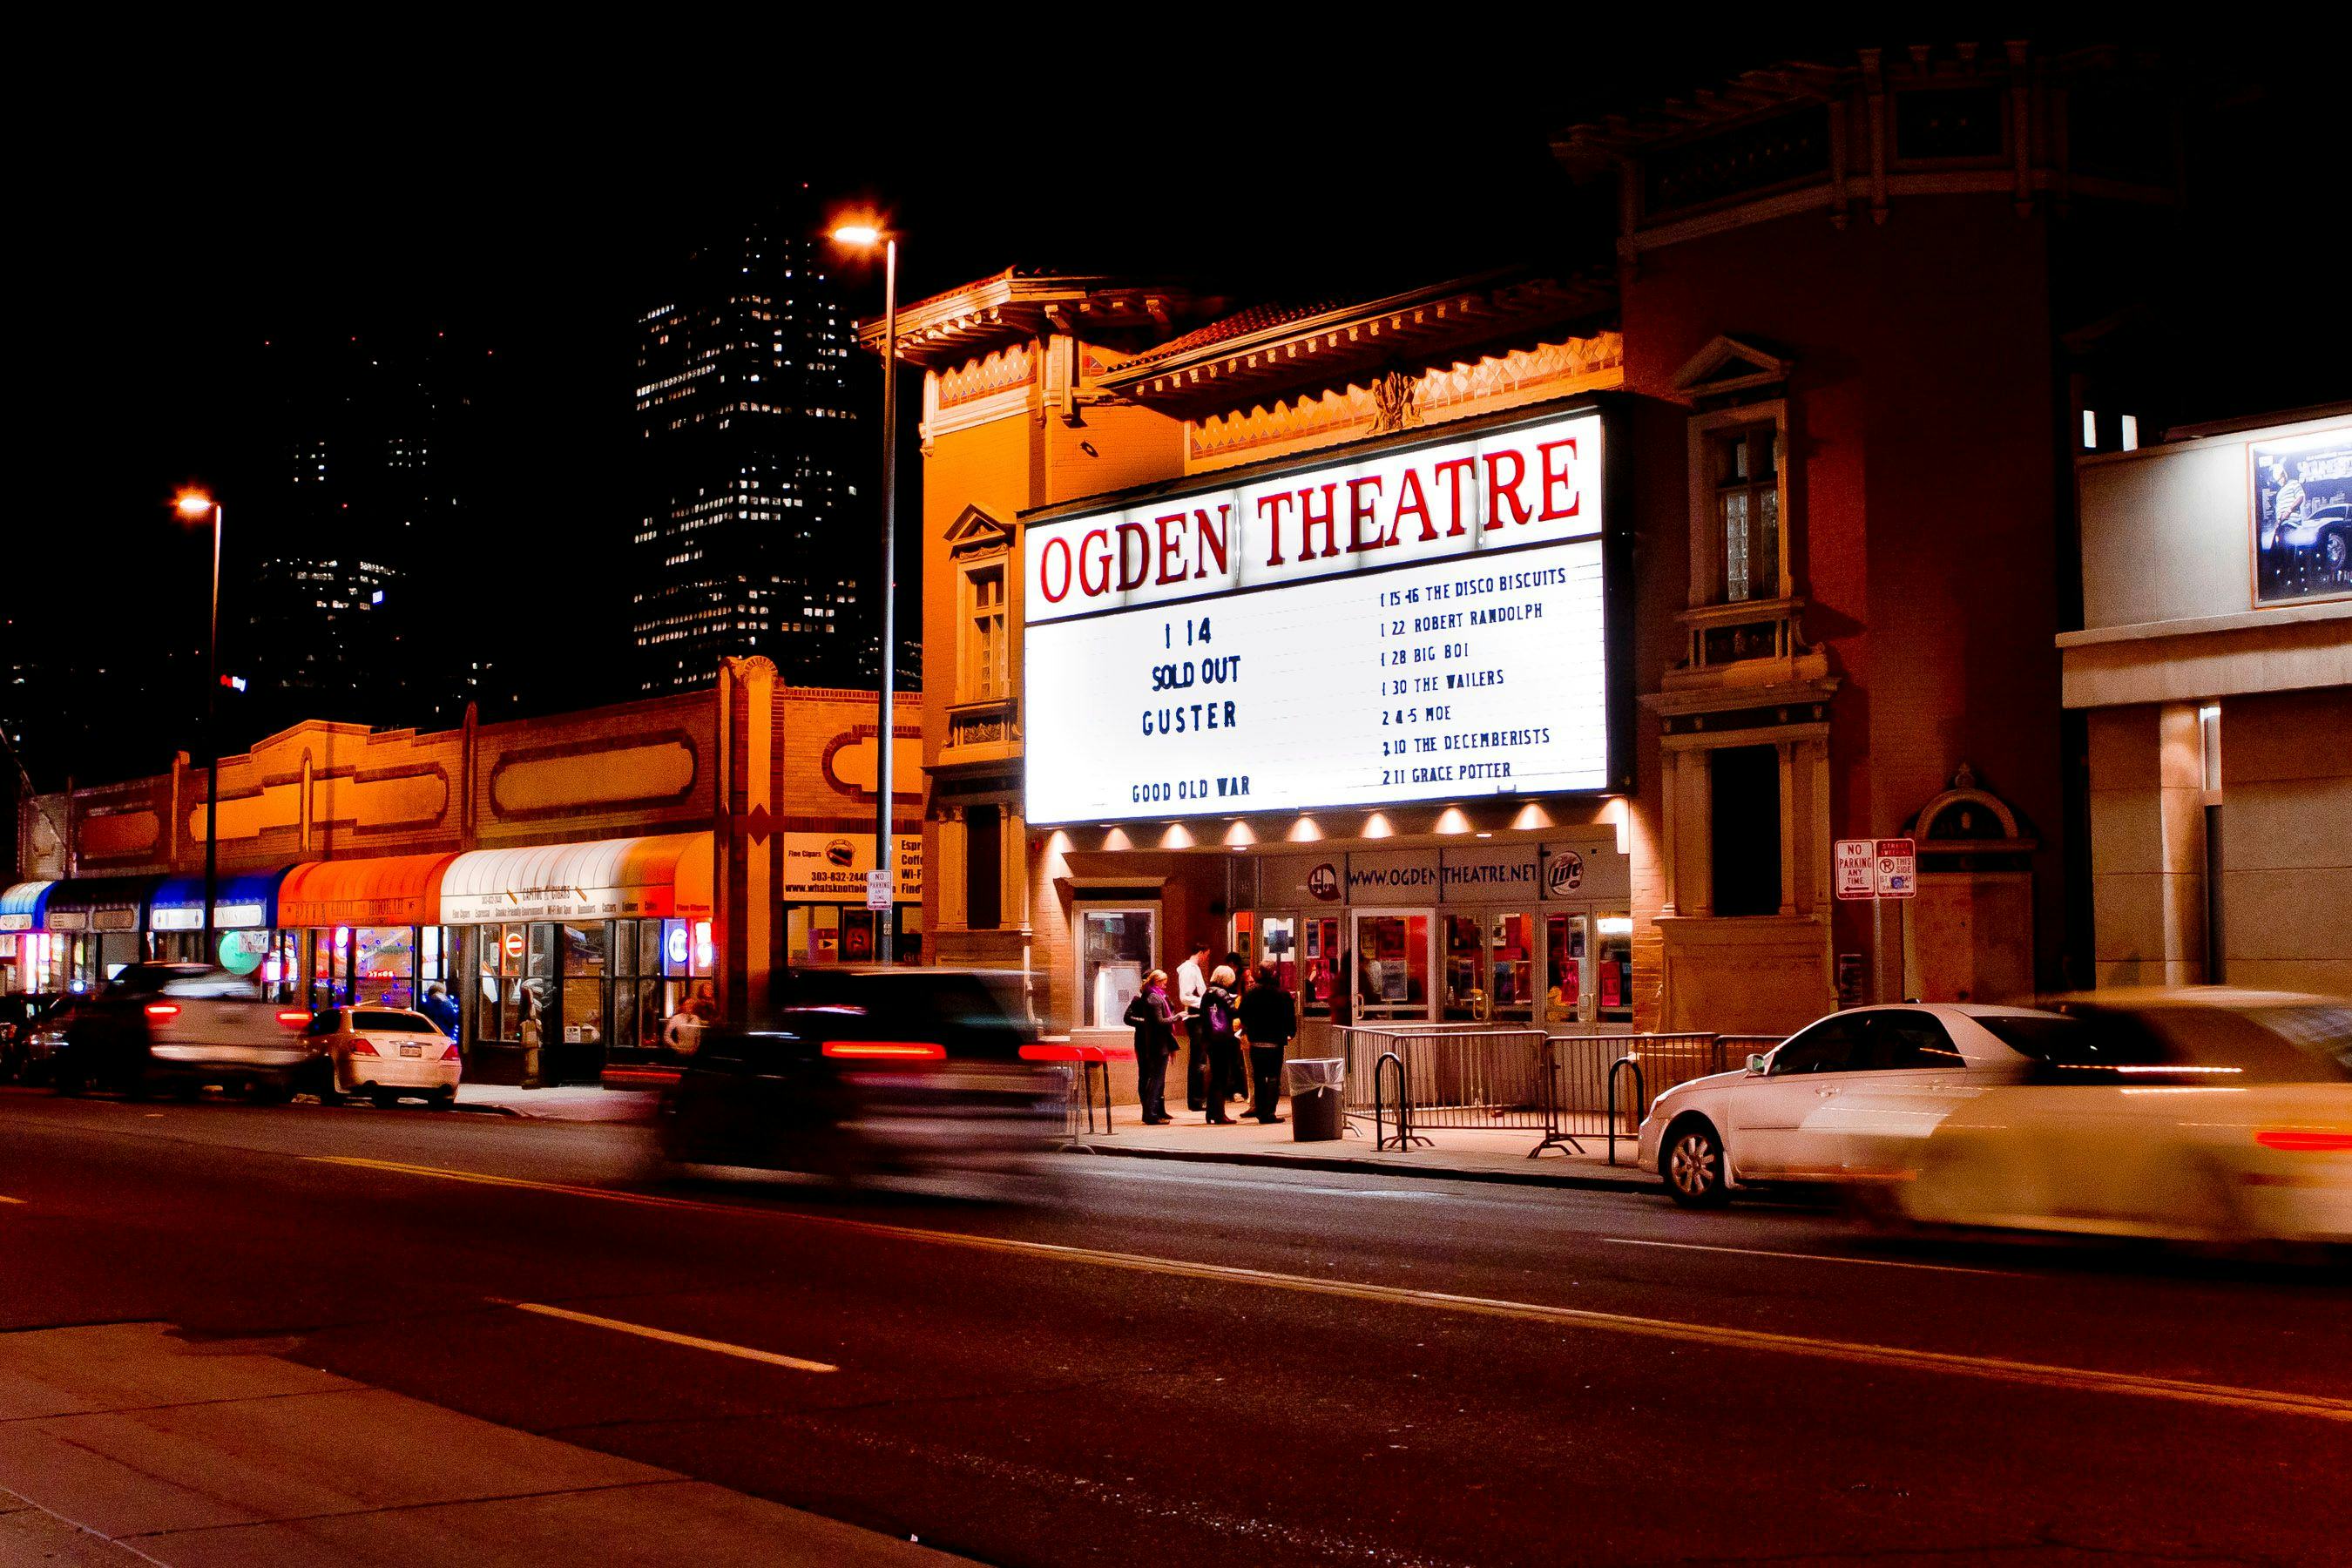 The Ogden Theatre 